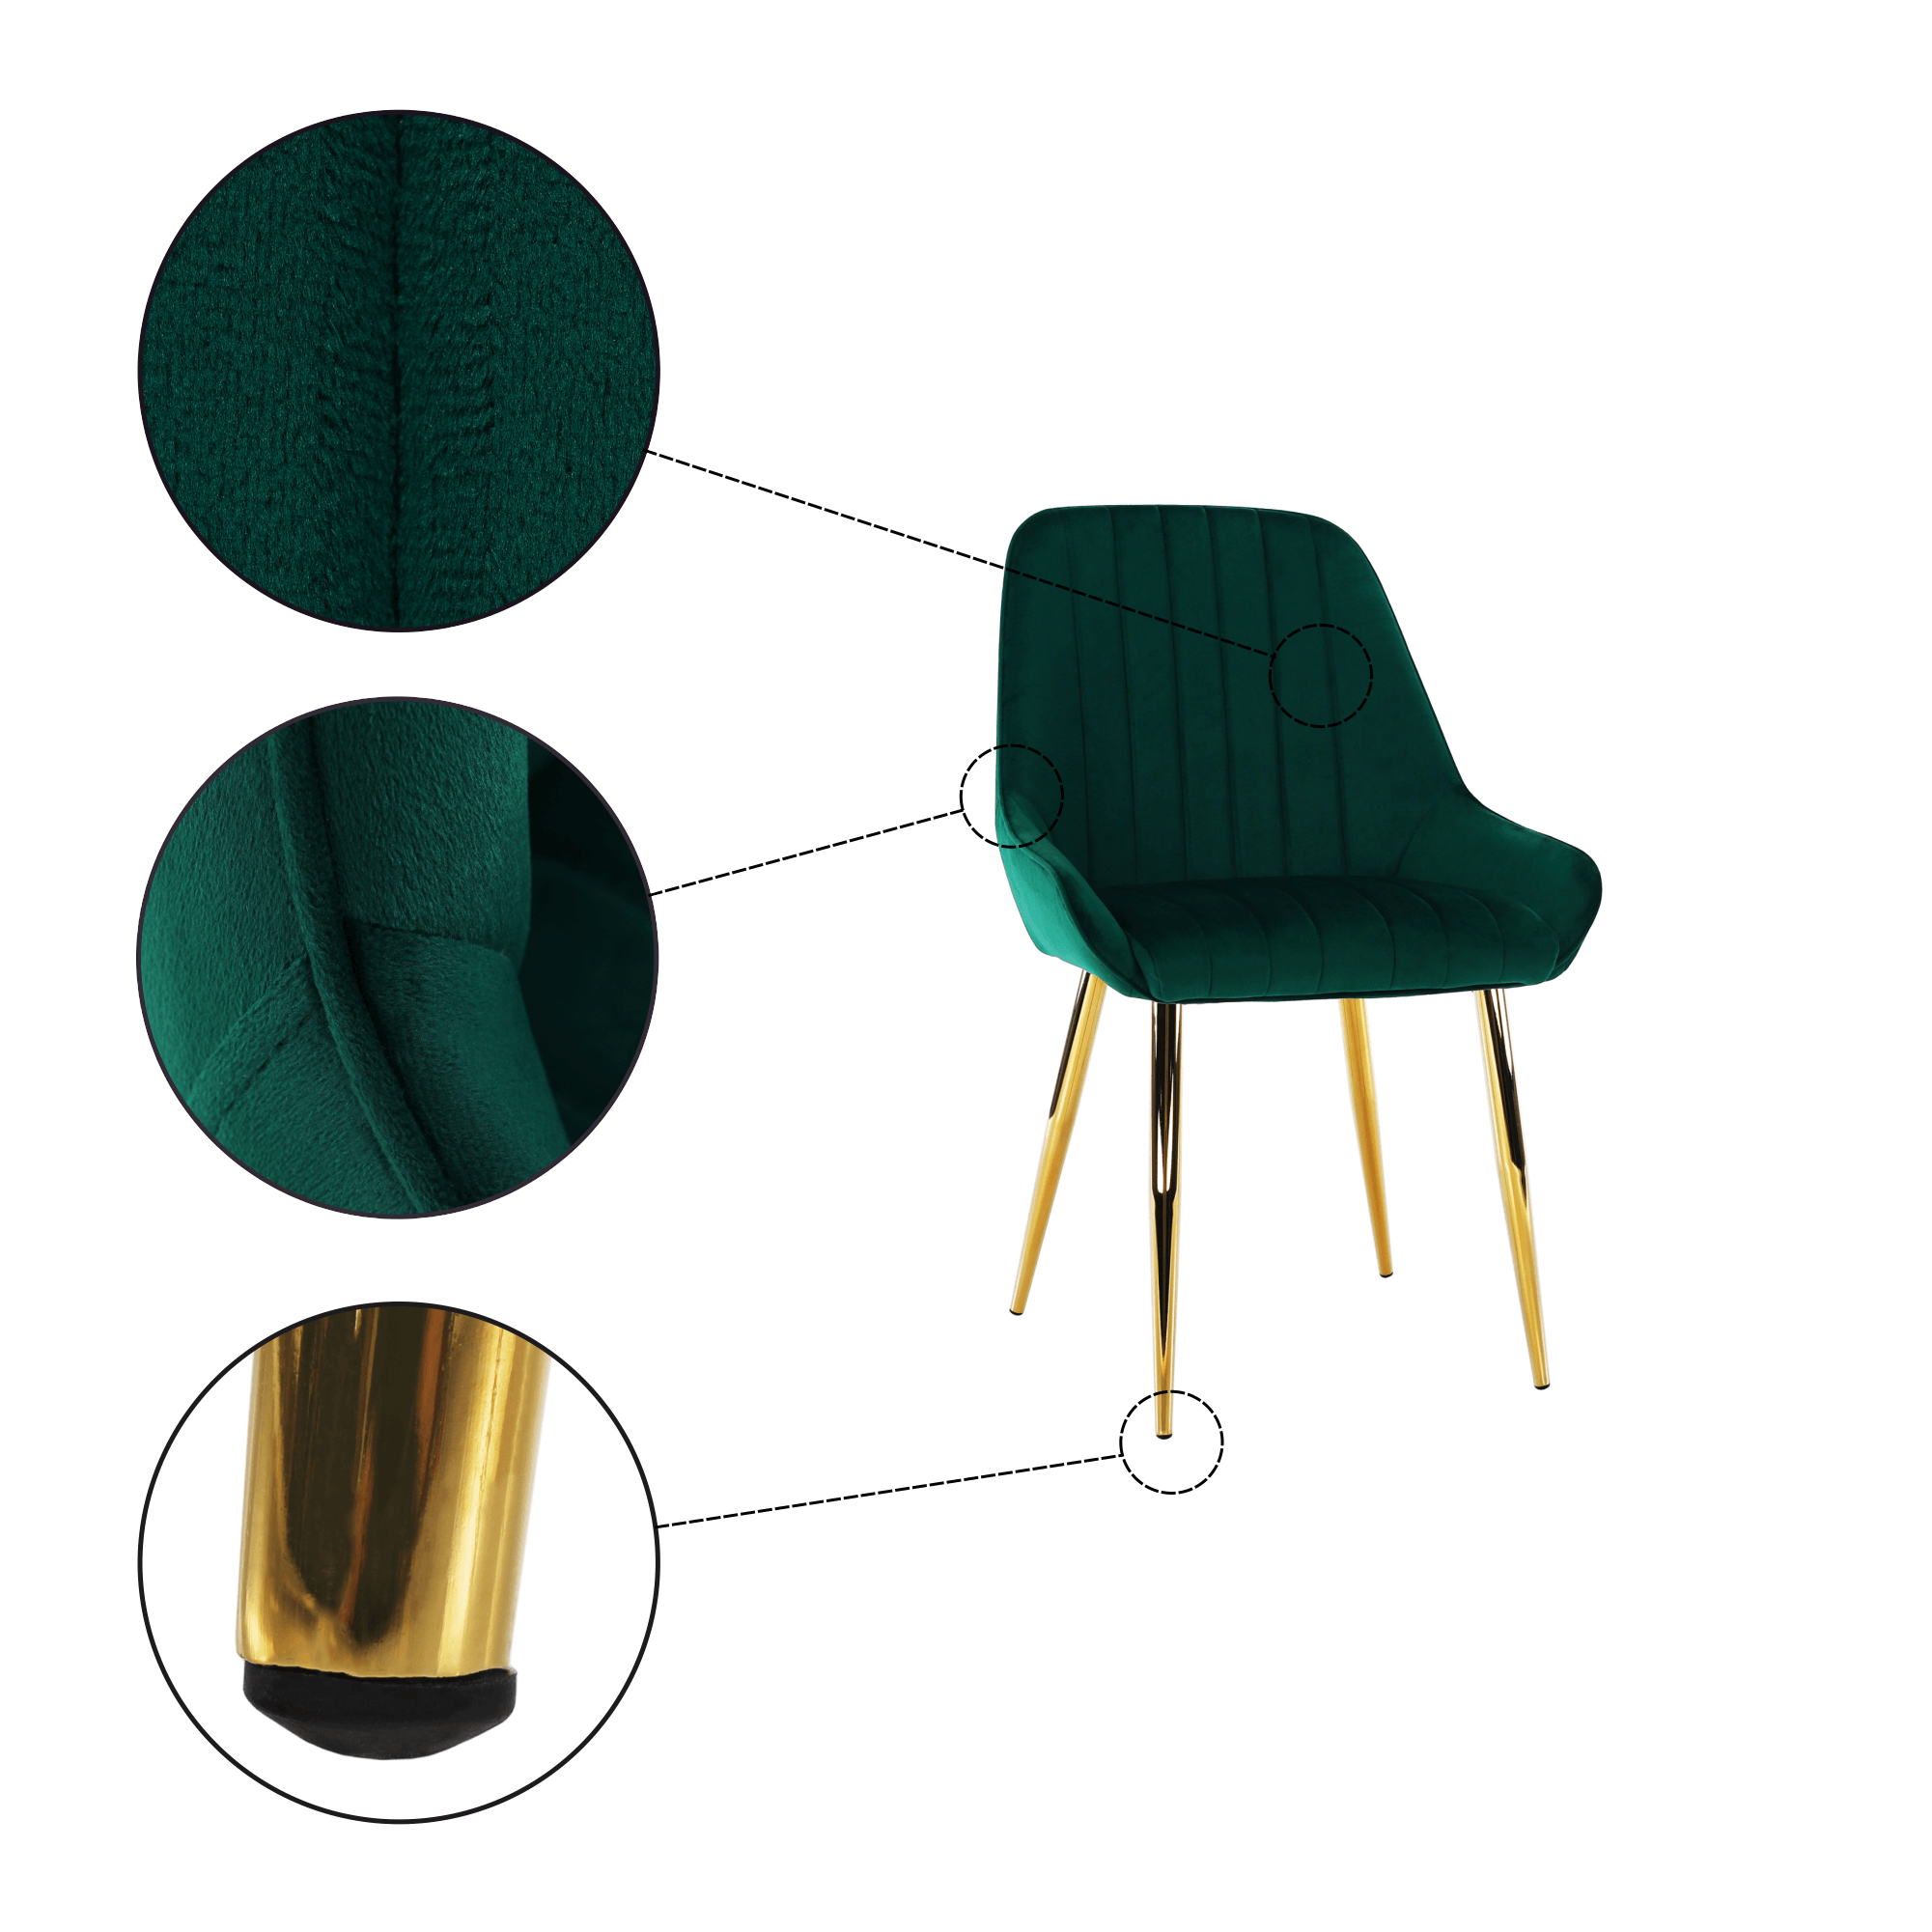 Scaun de sufragerie, design contemporan, textil, picioare aurii, Boris